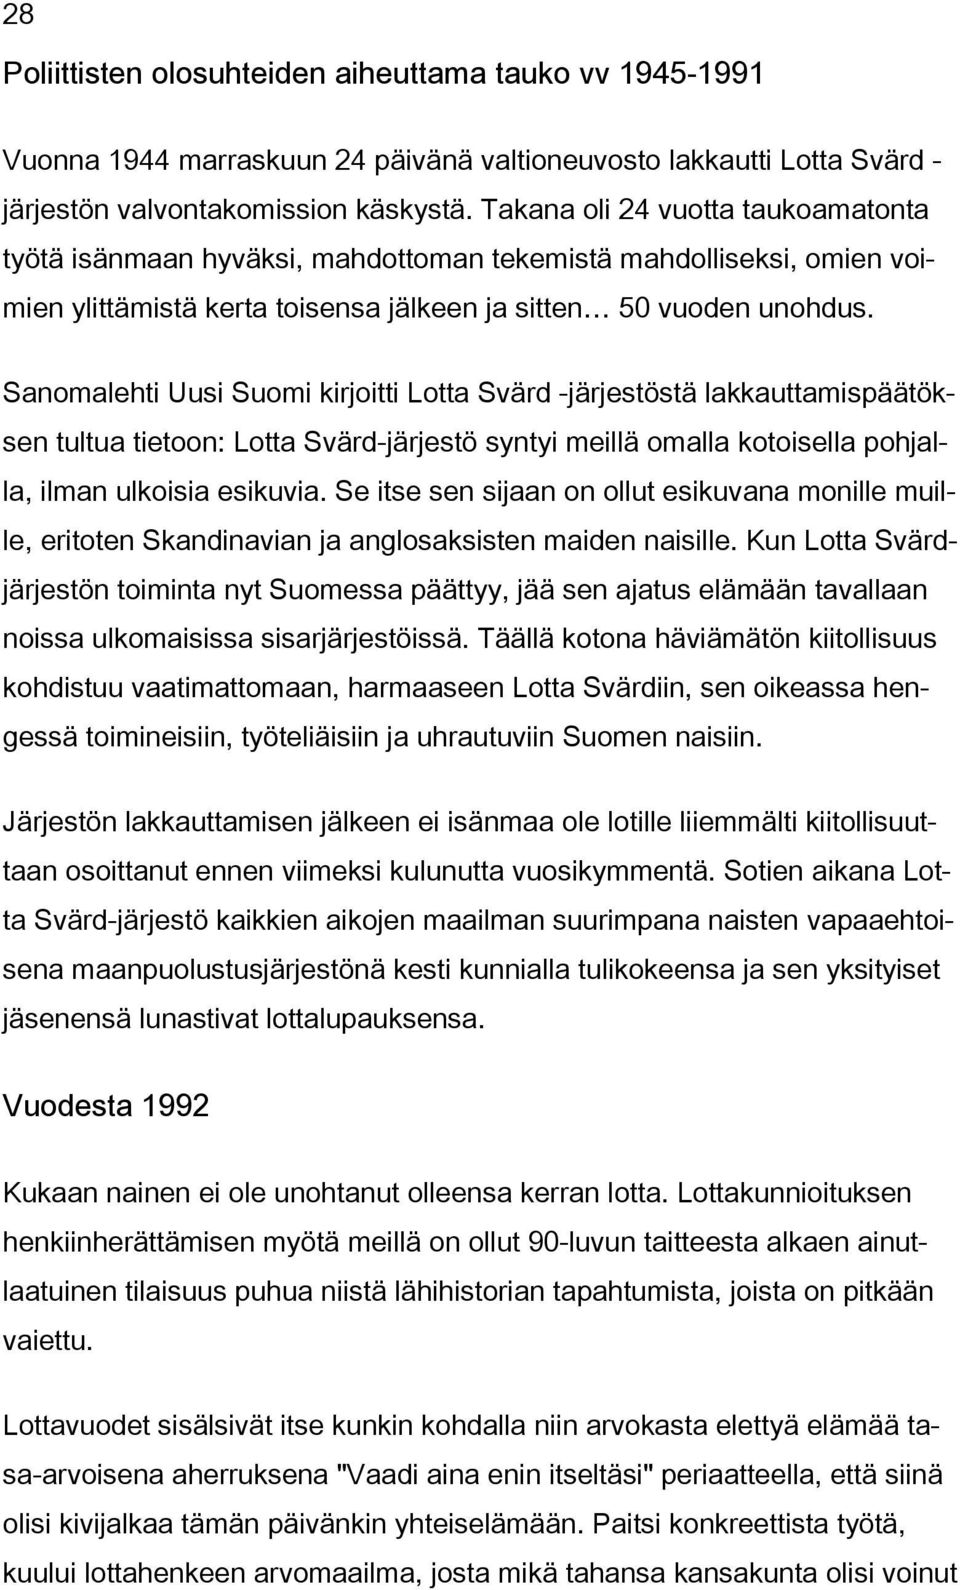 Sanomalehti Uusi Suomi kirjoitti Lotta Svärd -järjestöstä lakkauttamispäätöksen tultua tietoon: Lotta Svärd-järjestö syntyi meillä omalla kotoisella pohjalla, ilman ulkoisia esikuvia.